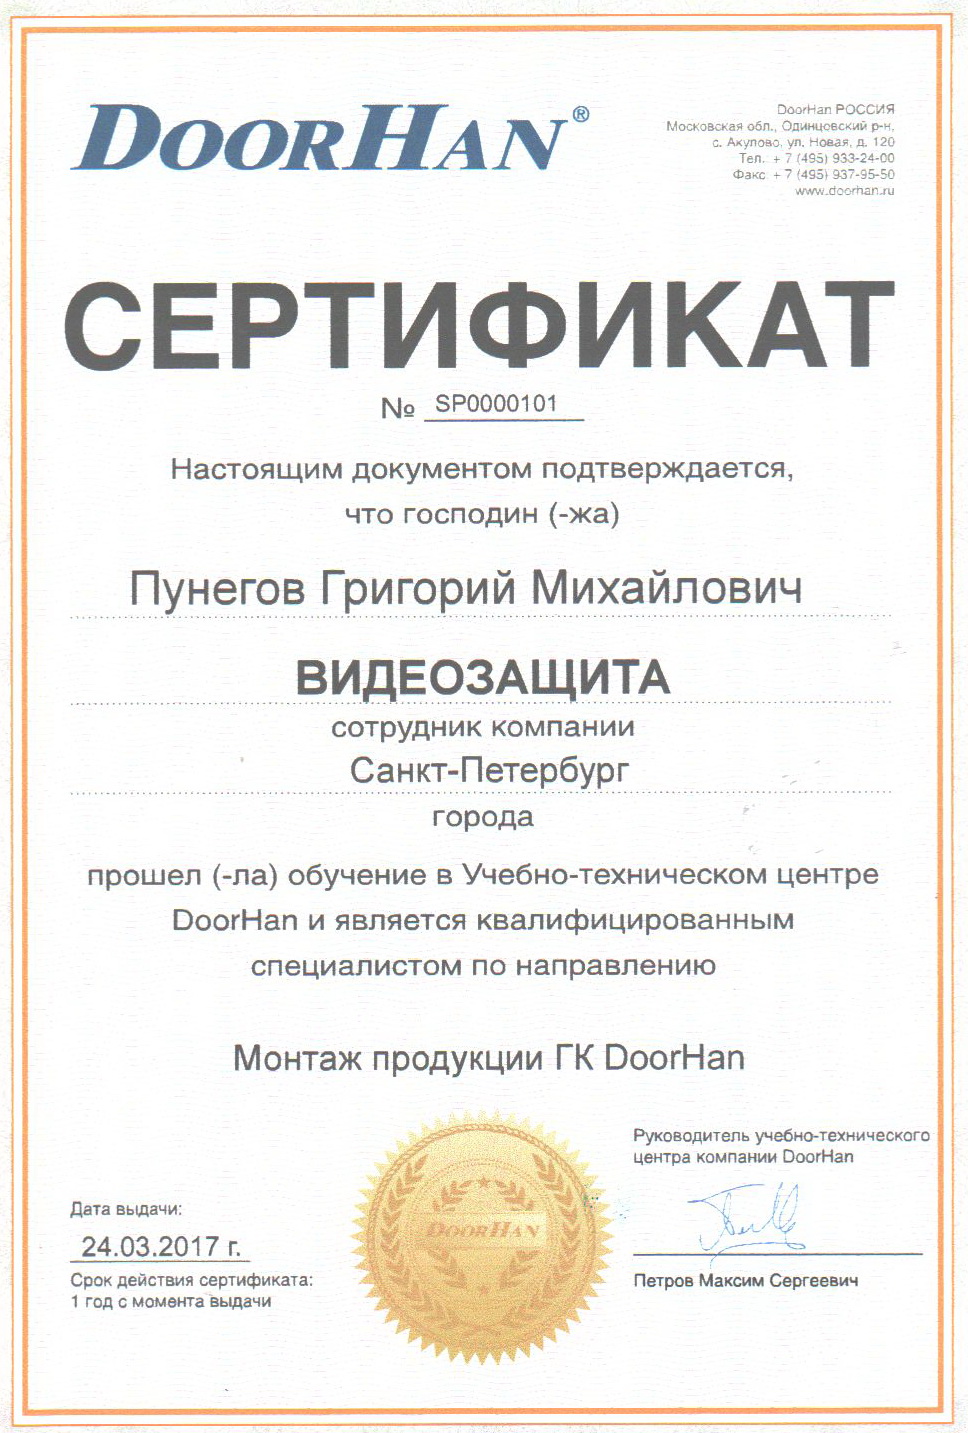 DoorHan сертификат